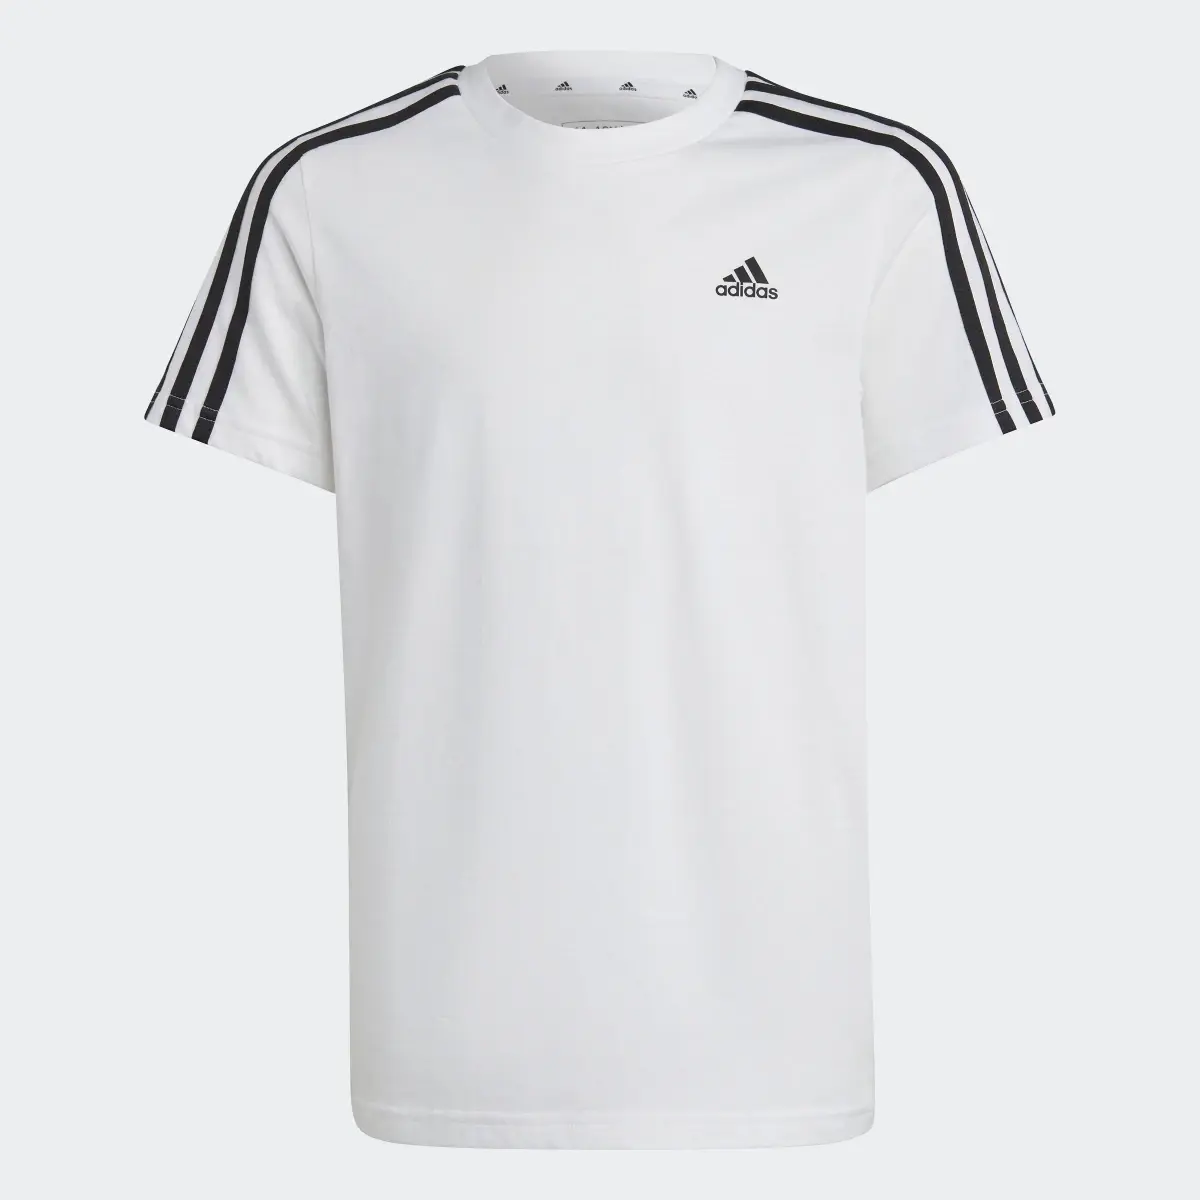 Adidas Essentials 3-Streifen Cotton T-Shirt. 3